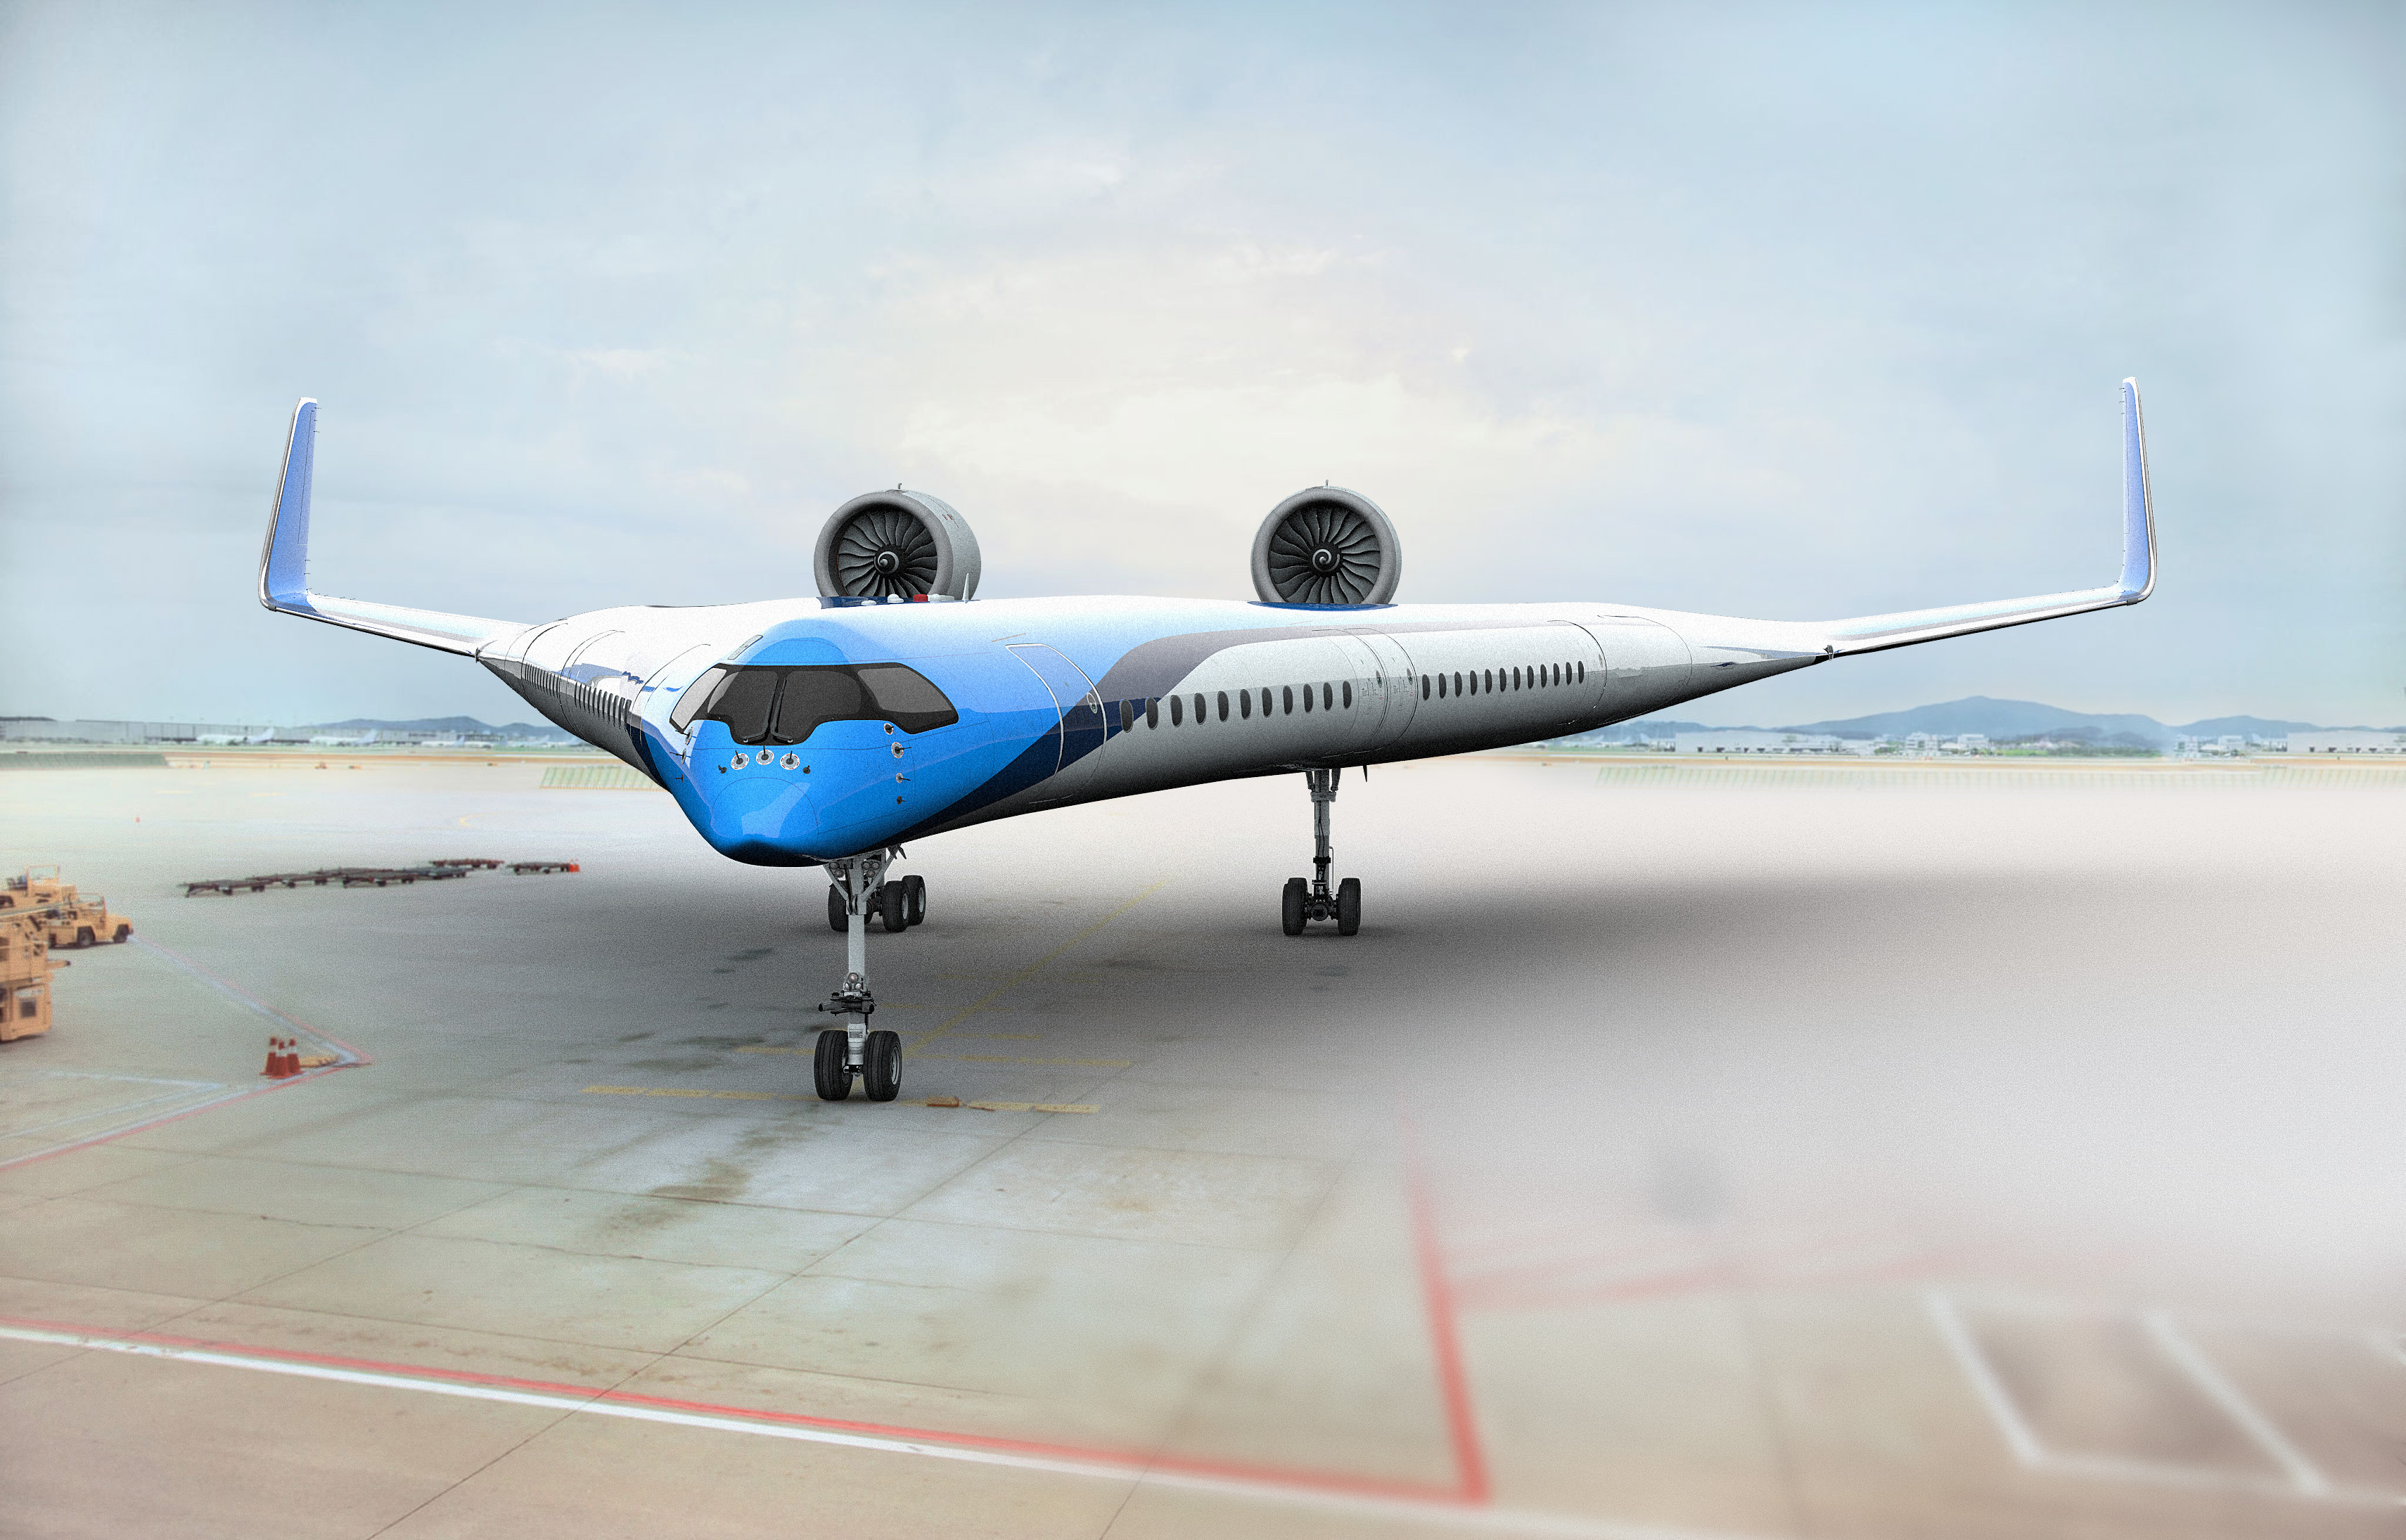 KLMオランダ航空が発表した新型飛行機「Flying-V」の形がギブソン製ギターと完全に一致 / 性能は結構いいもよう | ロケットニュース24